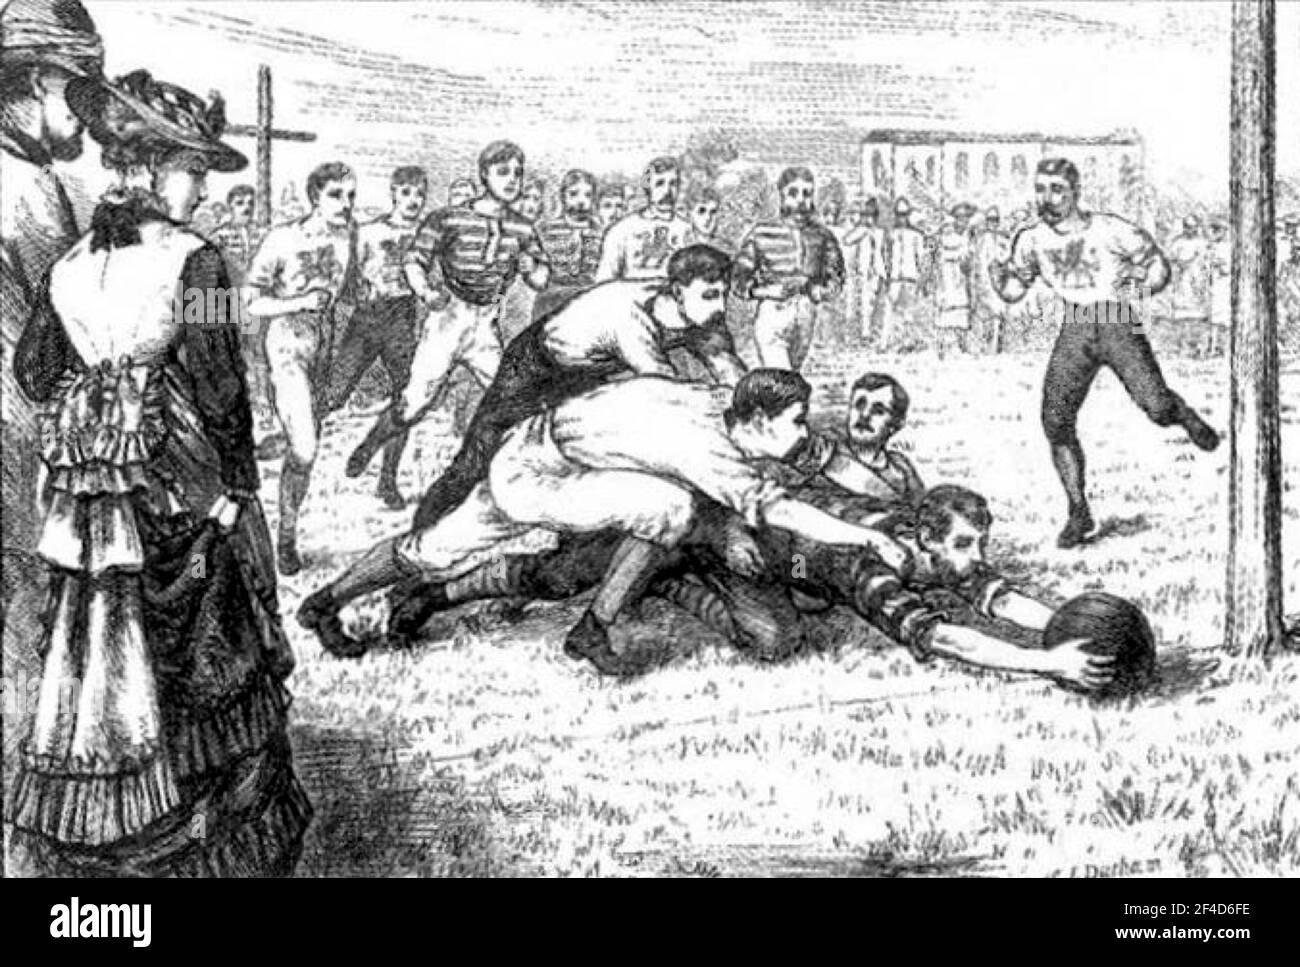 Europäer spielen Rugby-Fußball in Kalkutta, Indien, 1875 Stockfoto